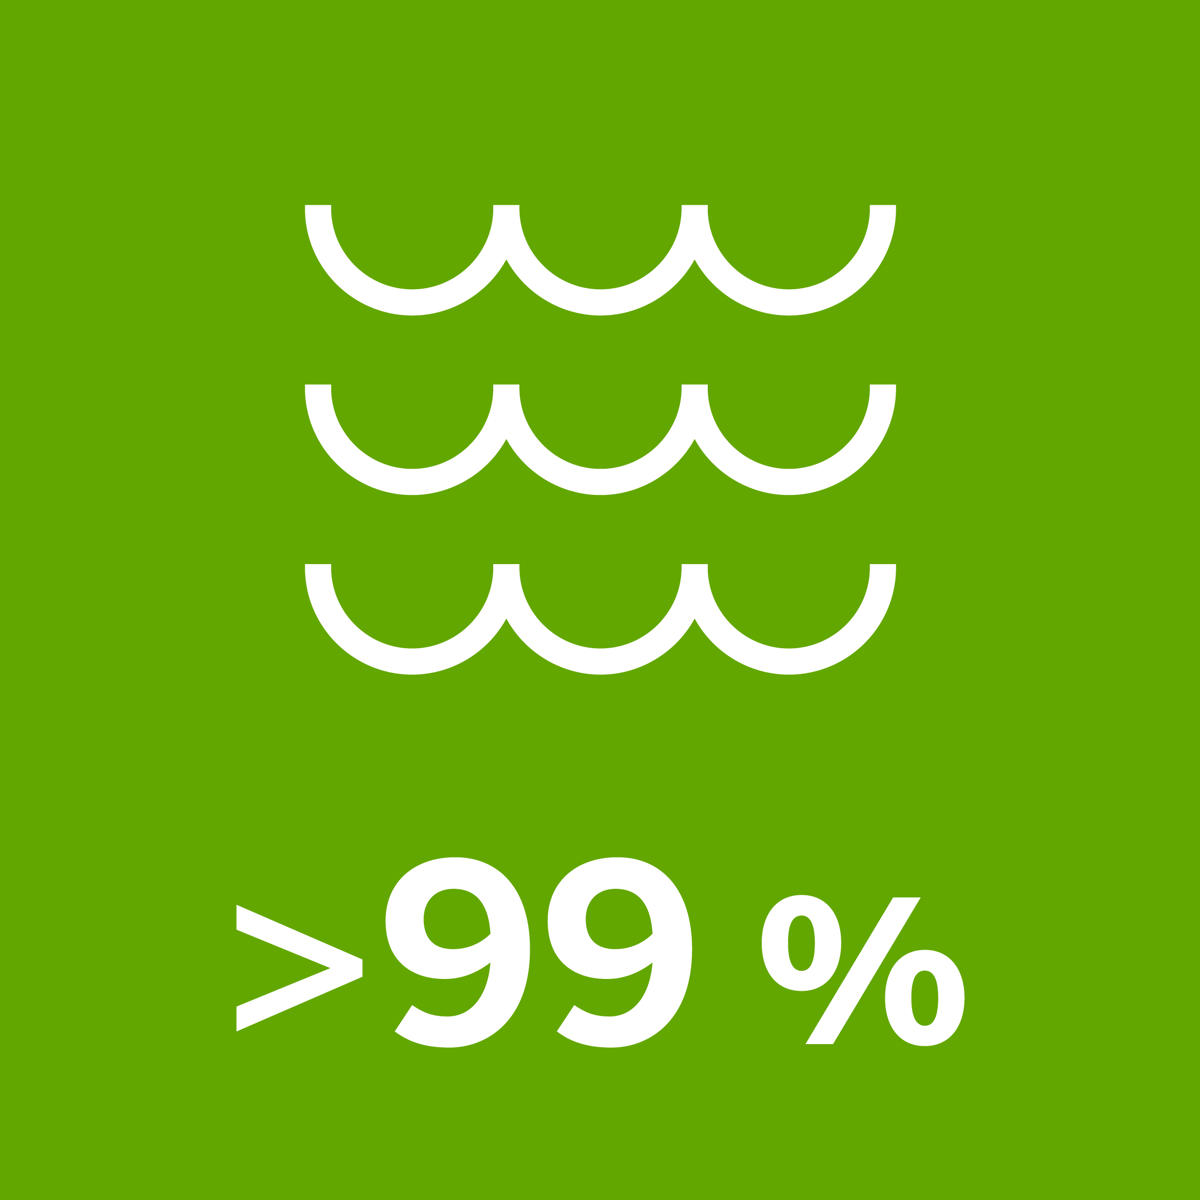 >99 % procent av vattnet vi använder är ytvatten från sjöar och floder.